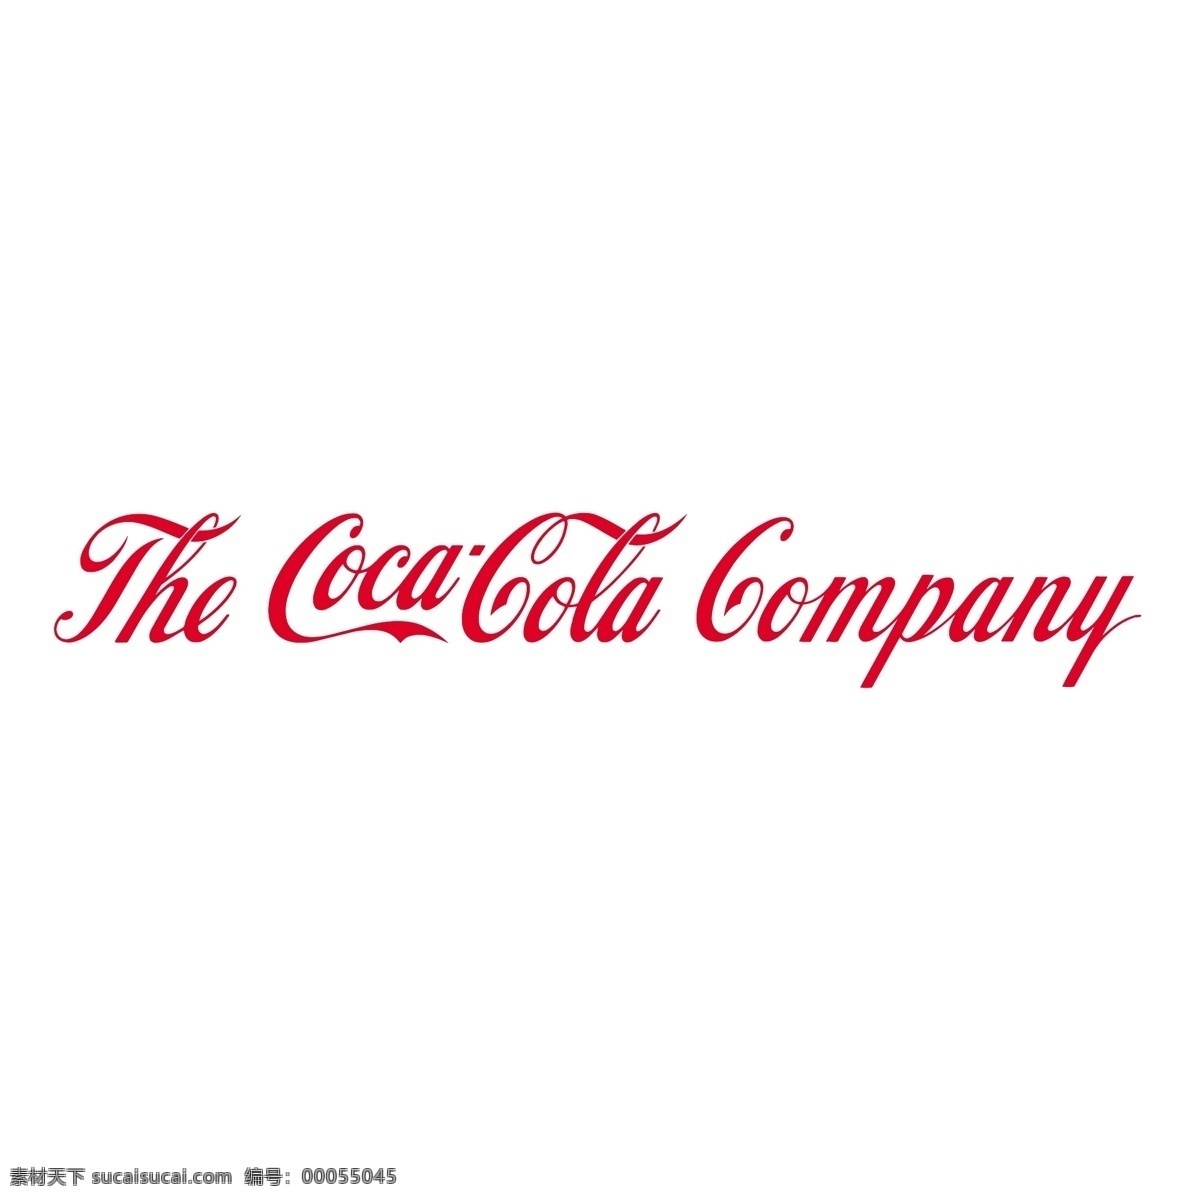 可口可乐公司 免费 标志 psd源文件 logo设计